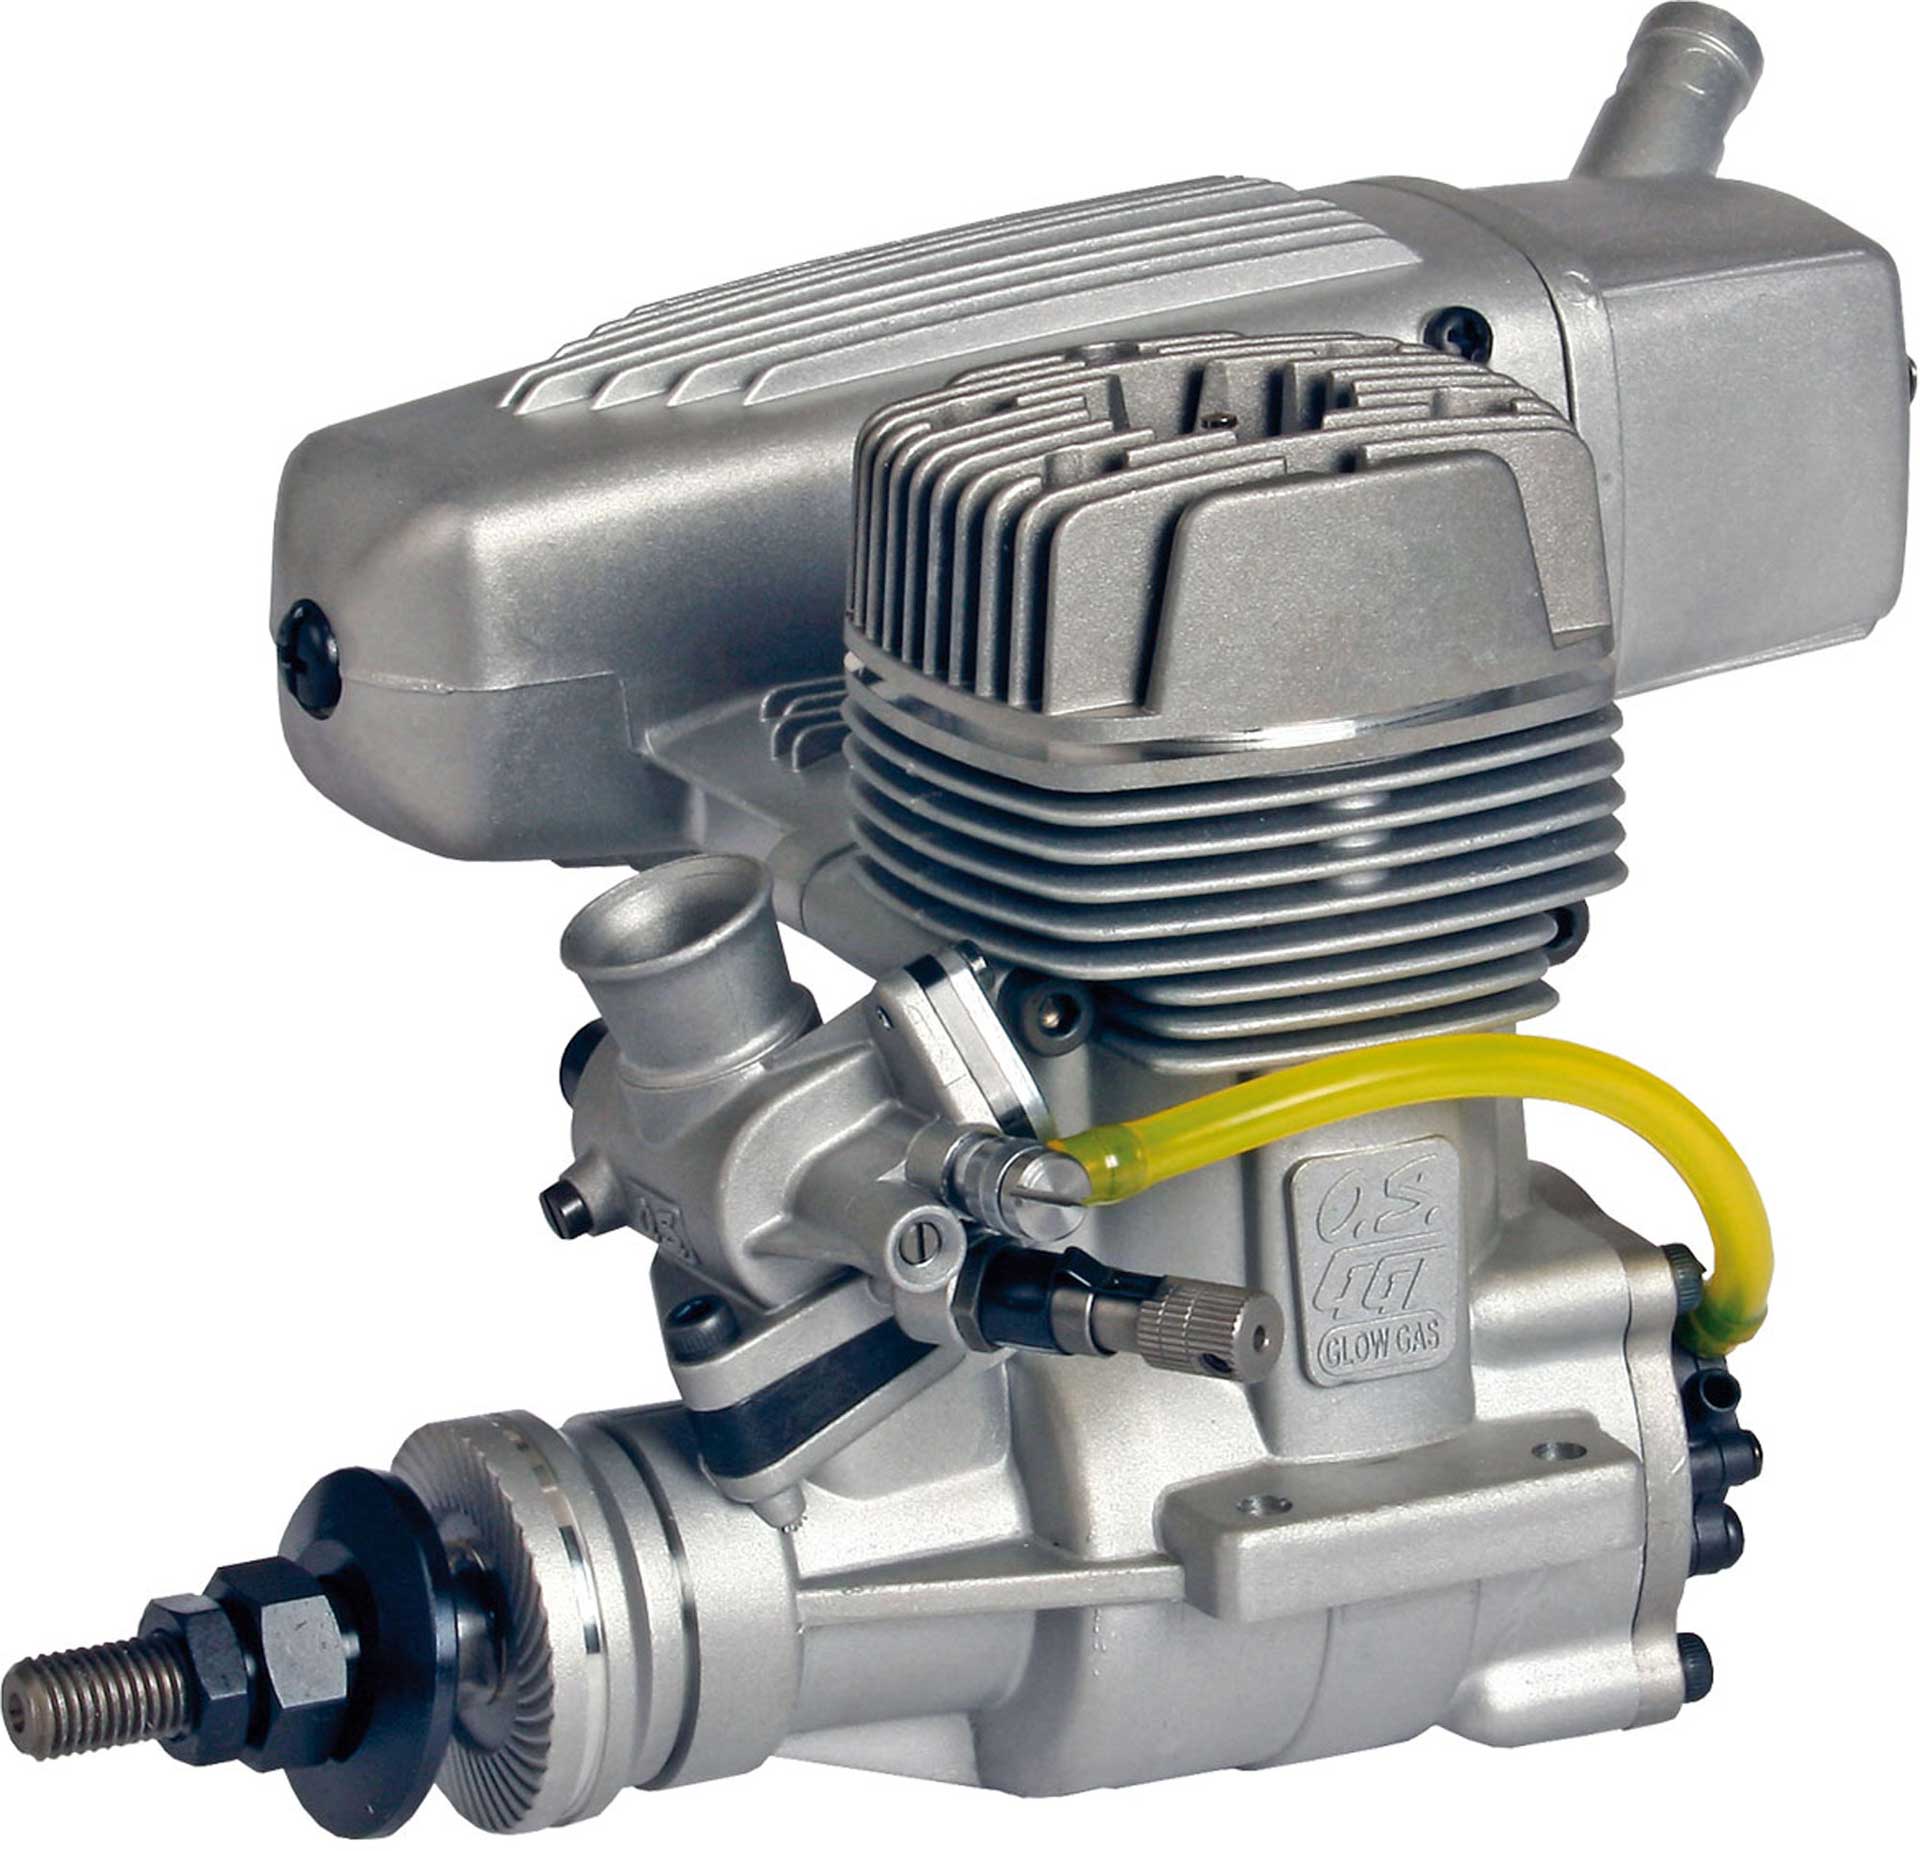 OS GGT 15 Benzin Motor mit Glühzündung und Schalldämpfer E-4040